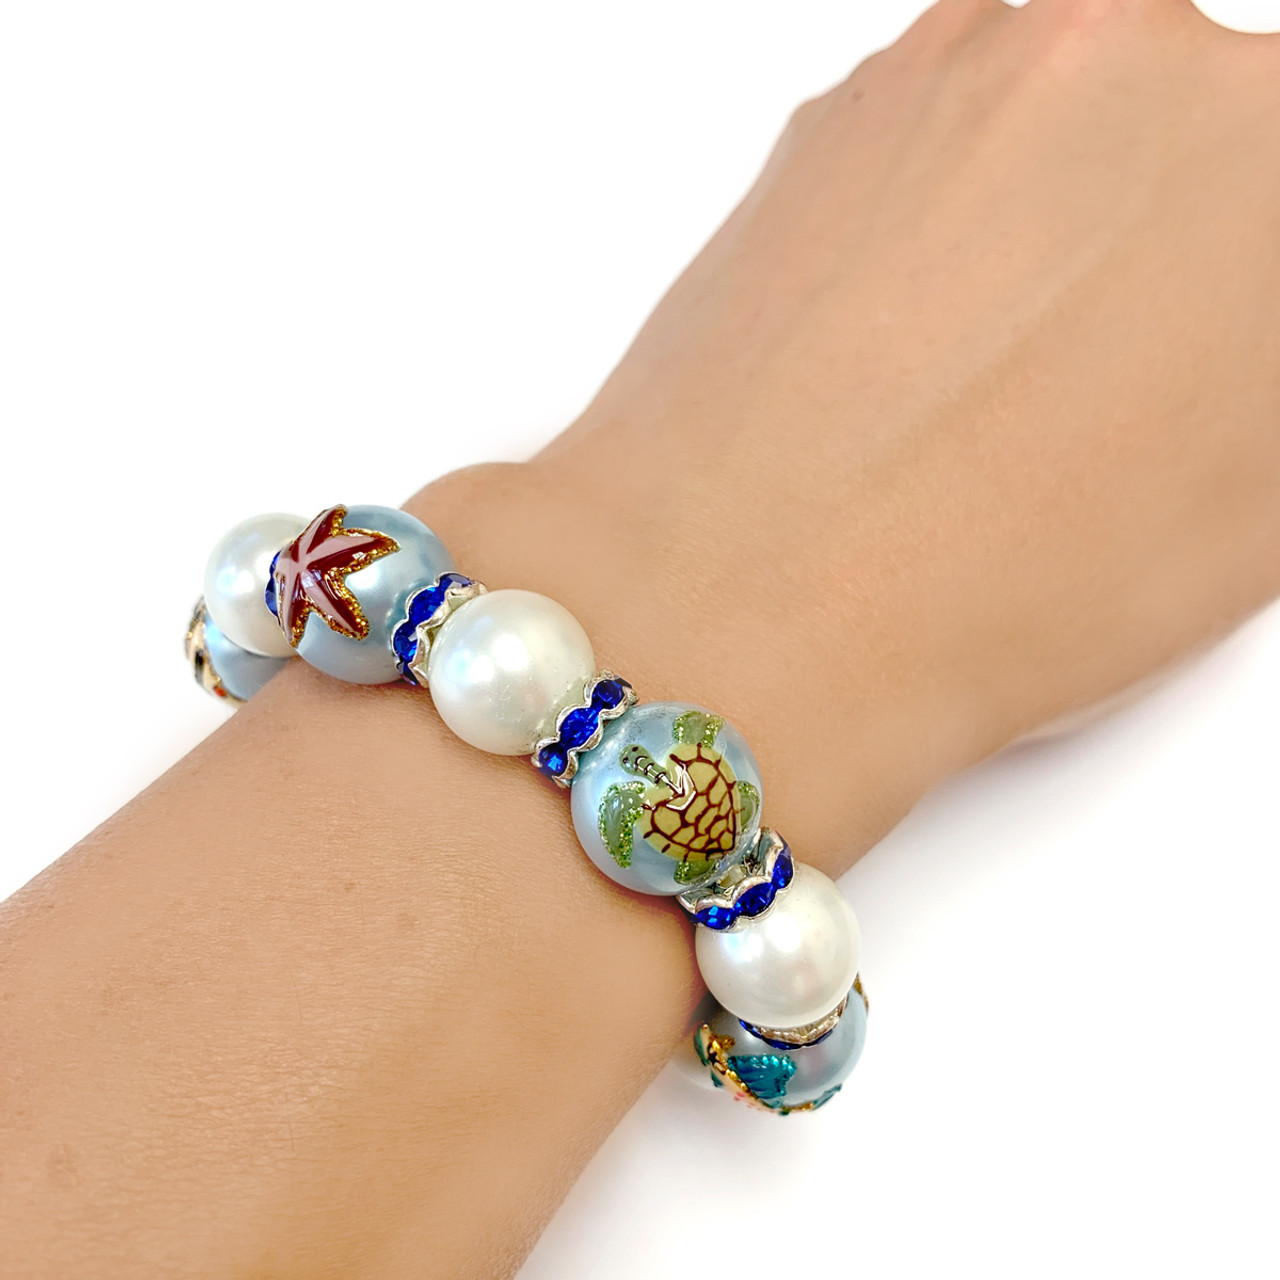 Blue Ocean Waves Bracelet – Boho Beach Girl Design